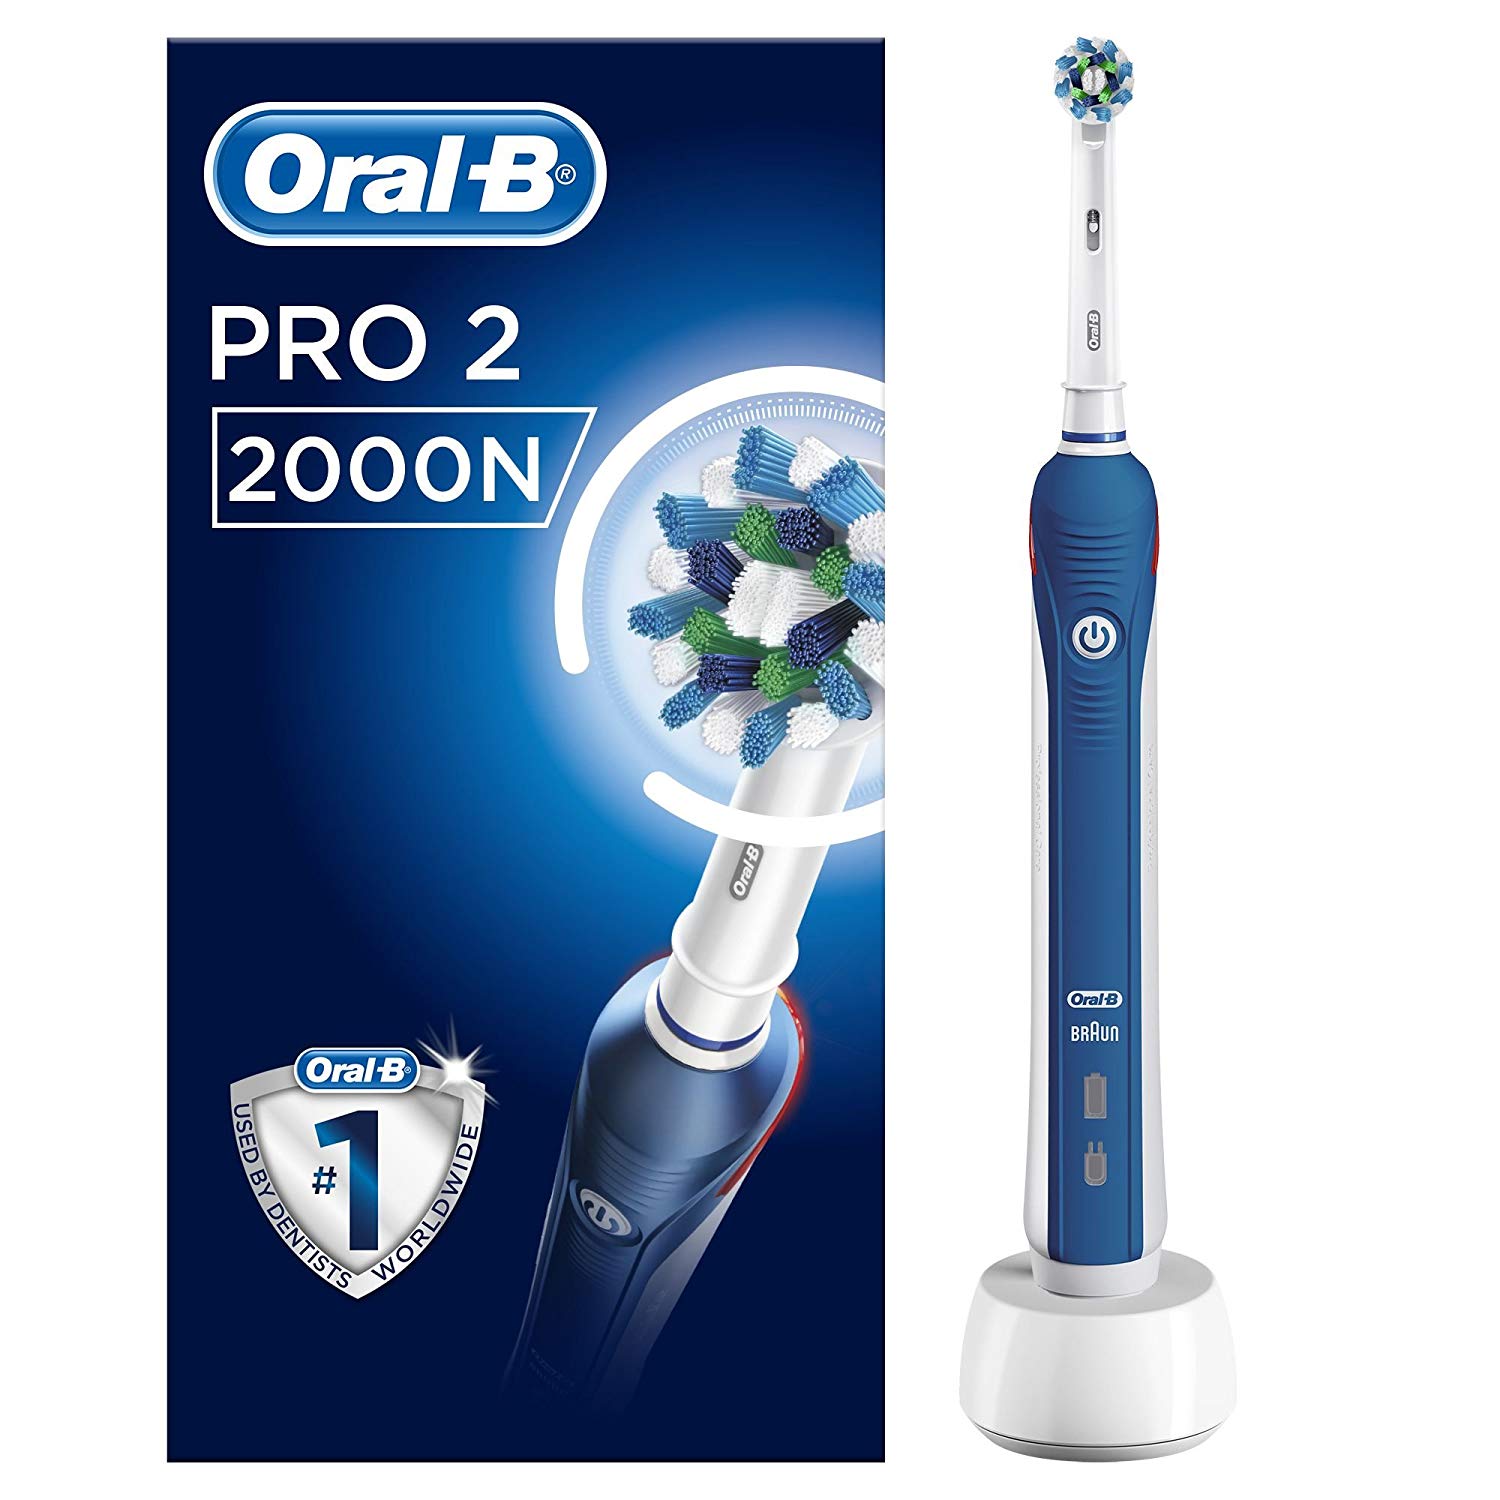 Oral-B PRO 2 2000N